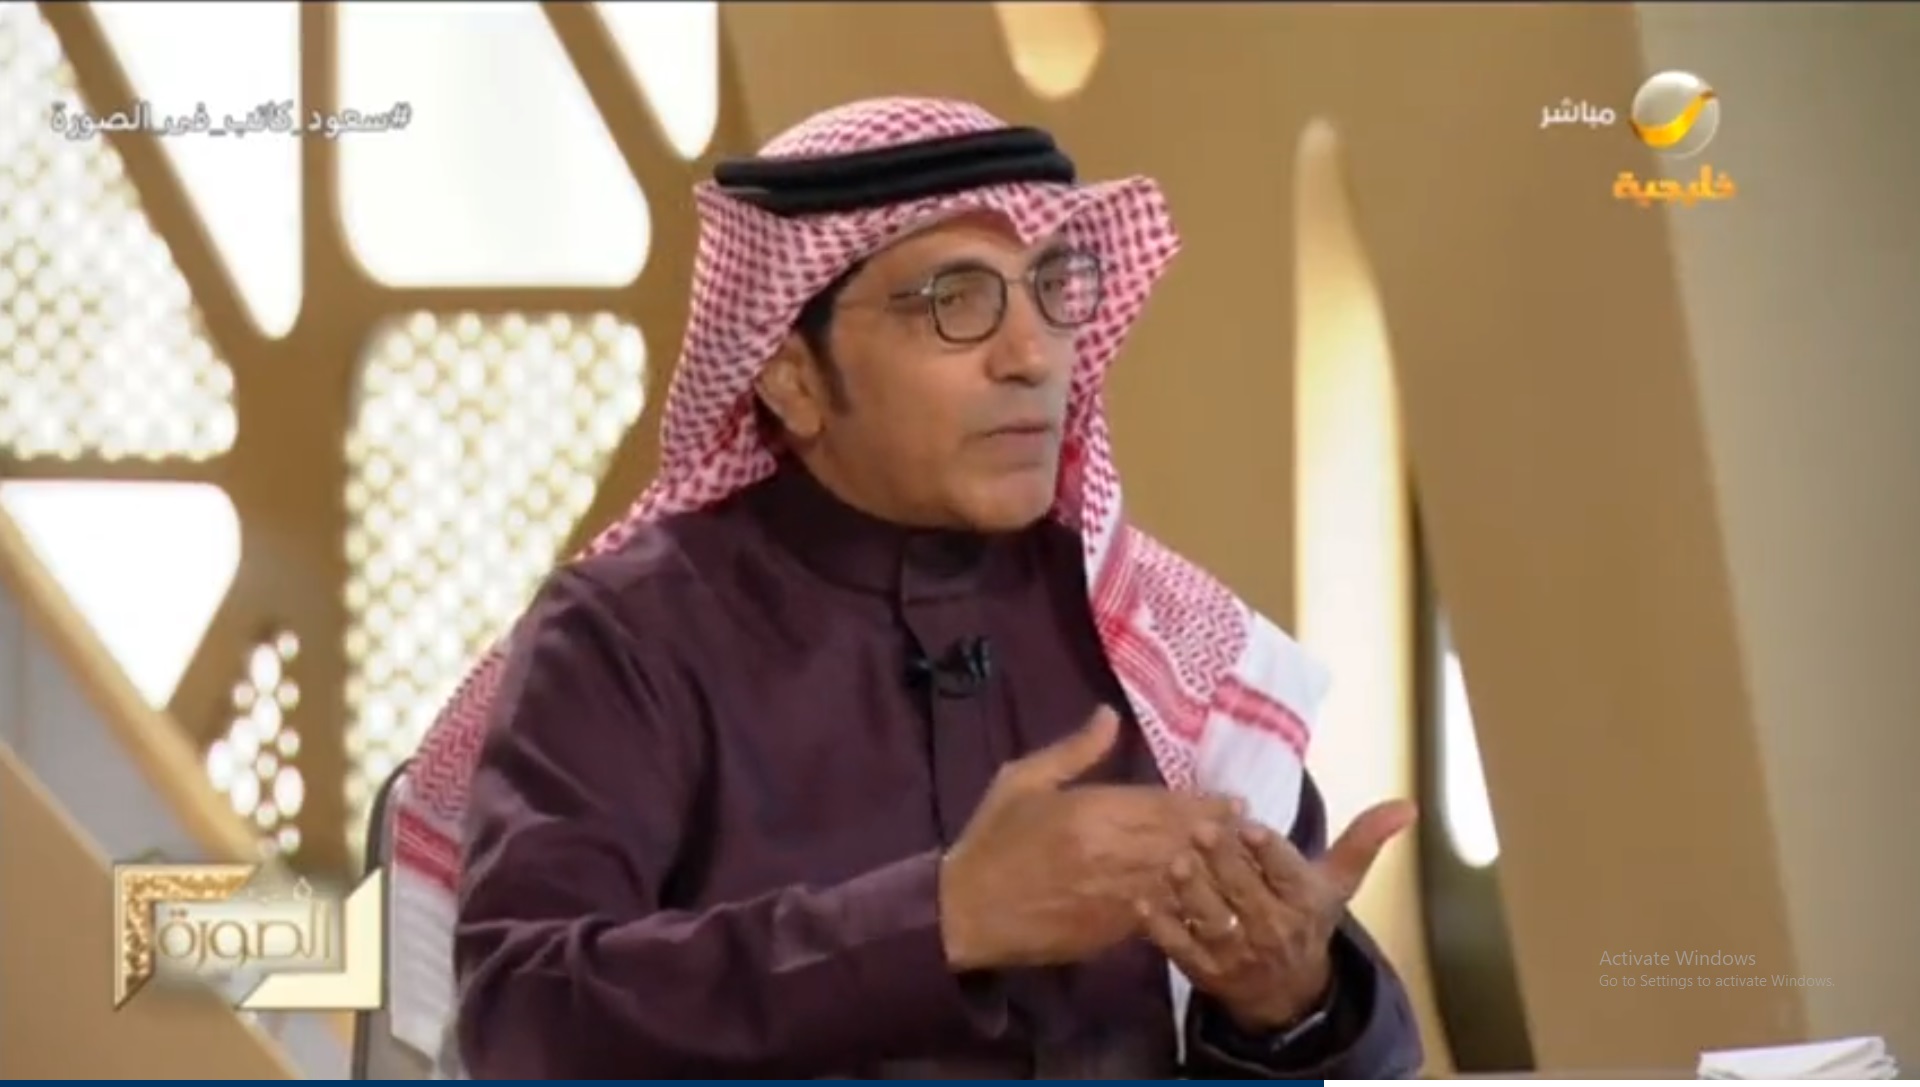 سعود كاتب يطالب بمجابهة فرض الغرب لثقافته